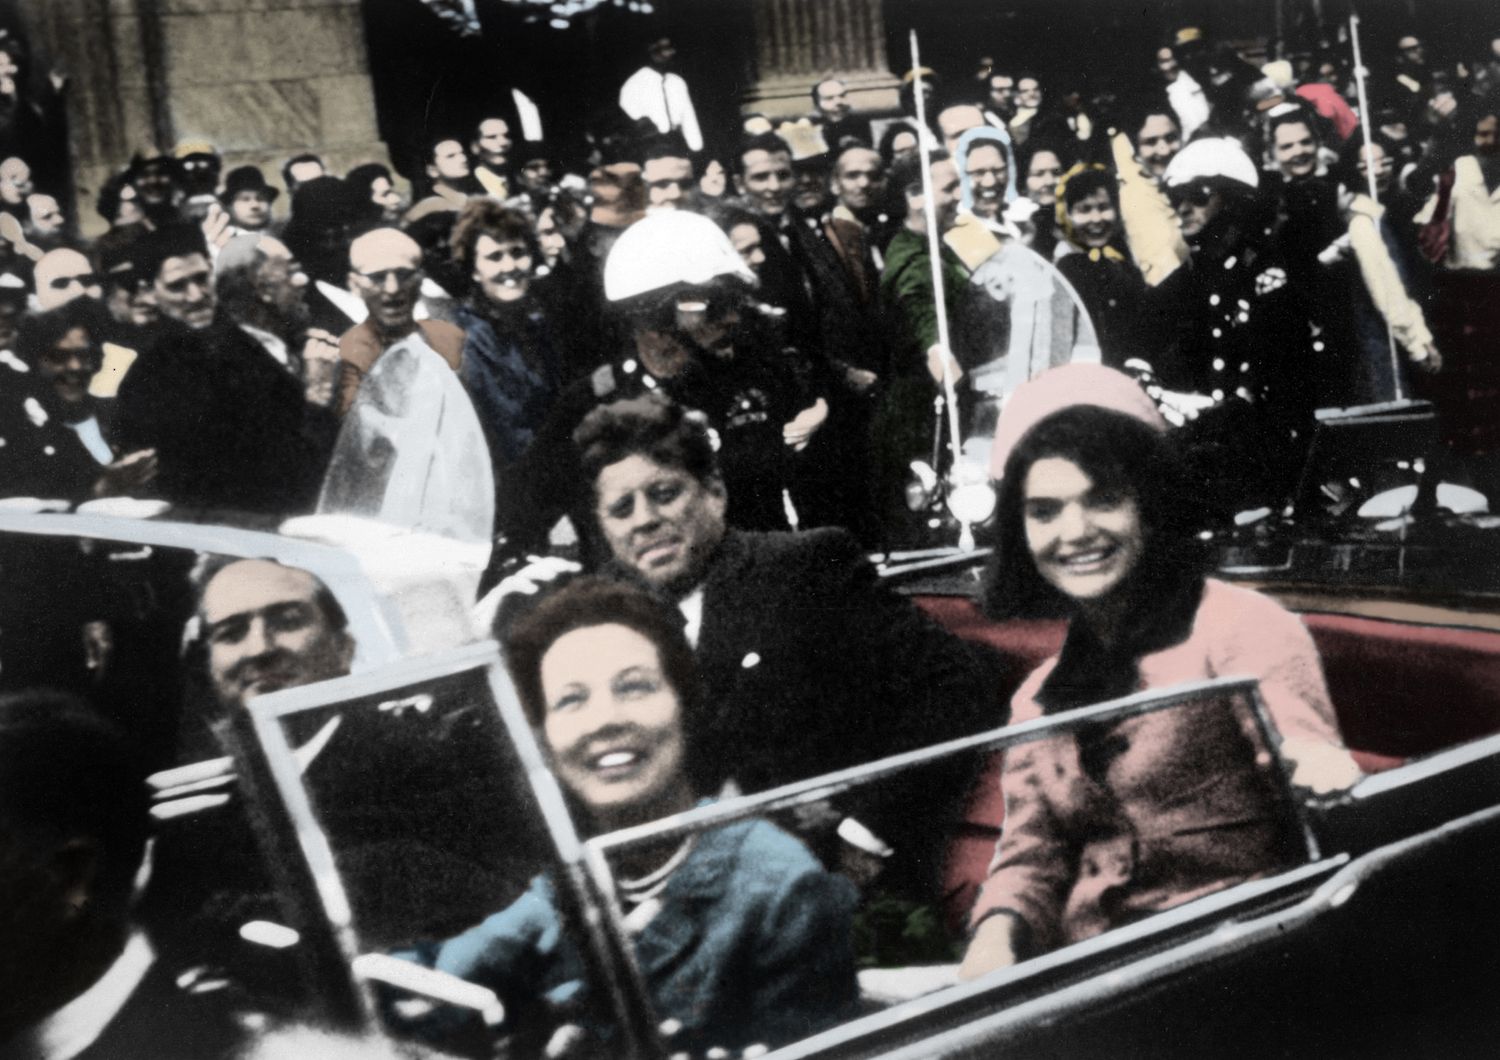 John e Jacqueline Kennedy sulla limousine presidenziale, Dallas 1963